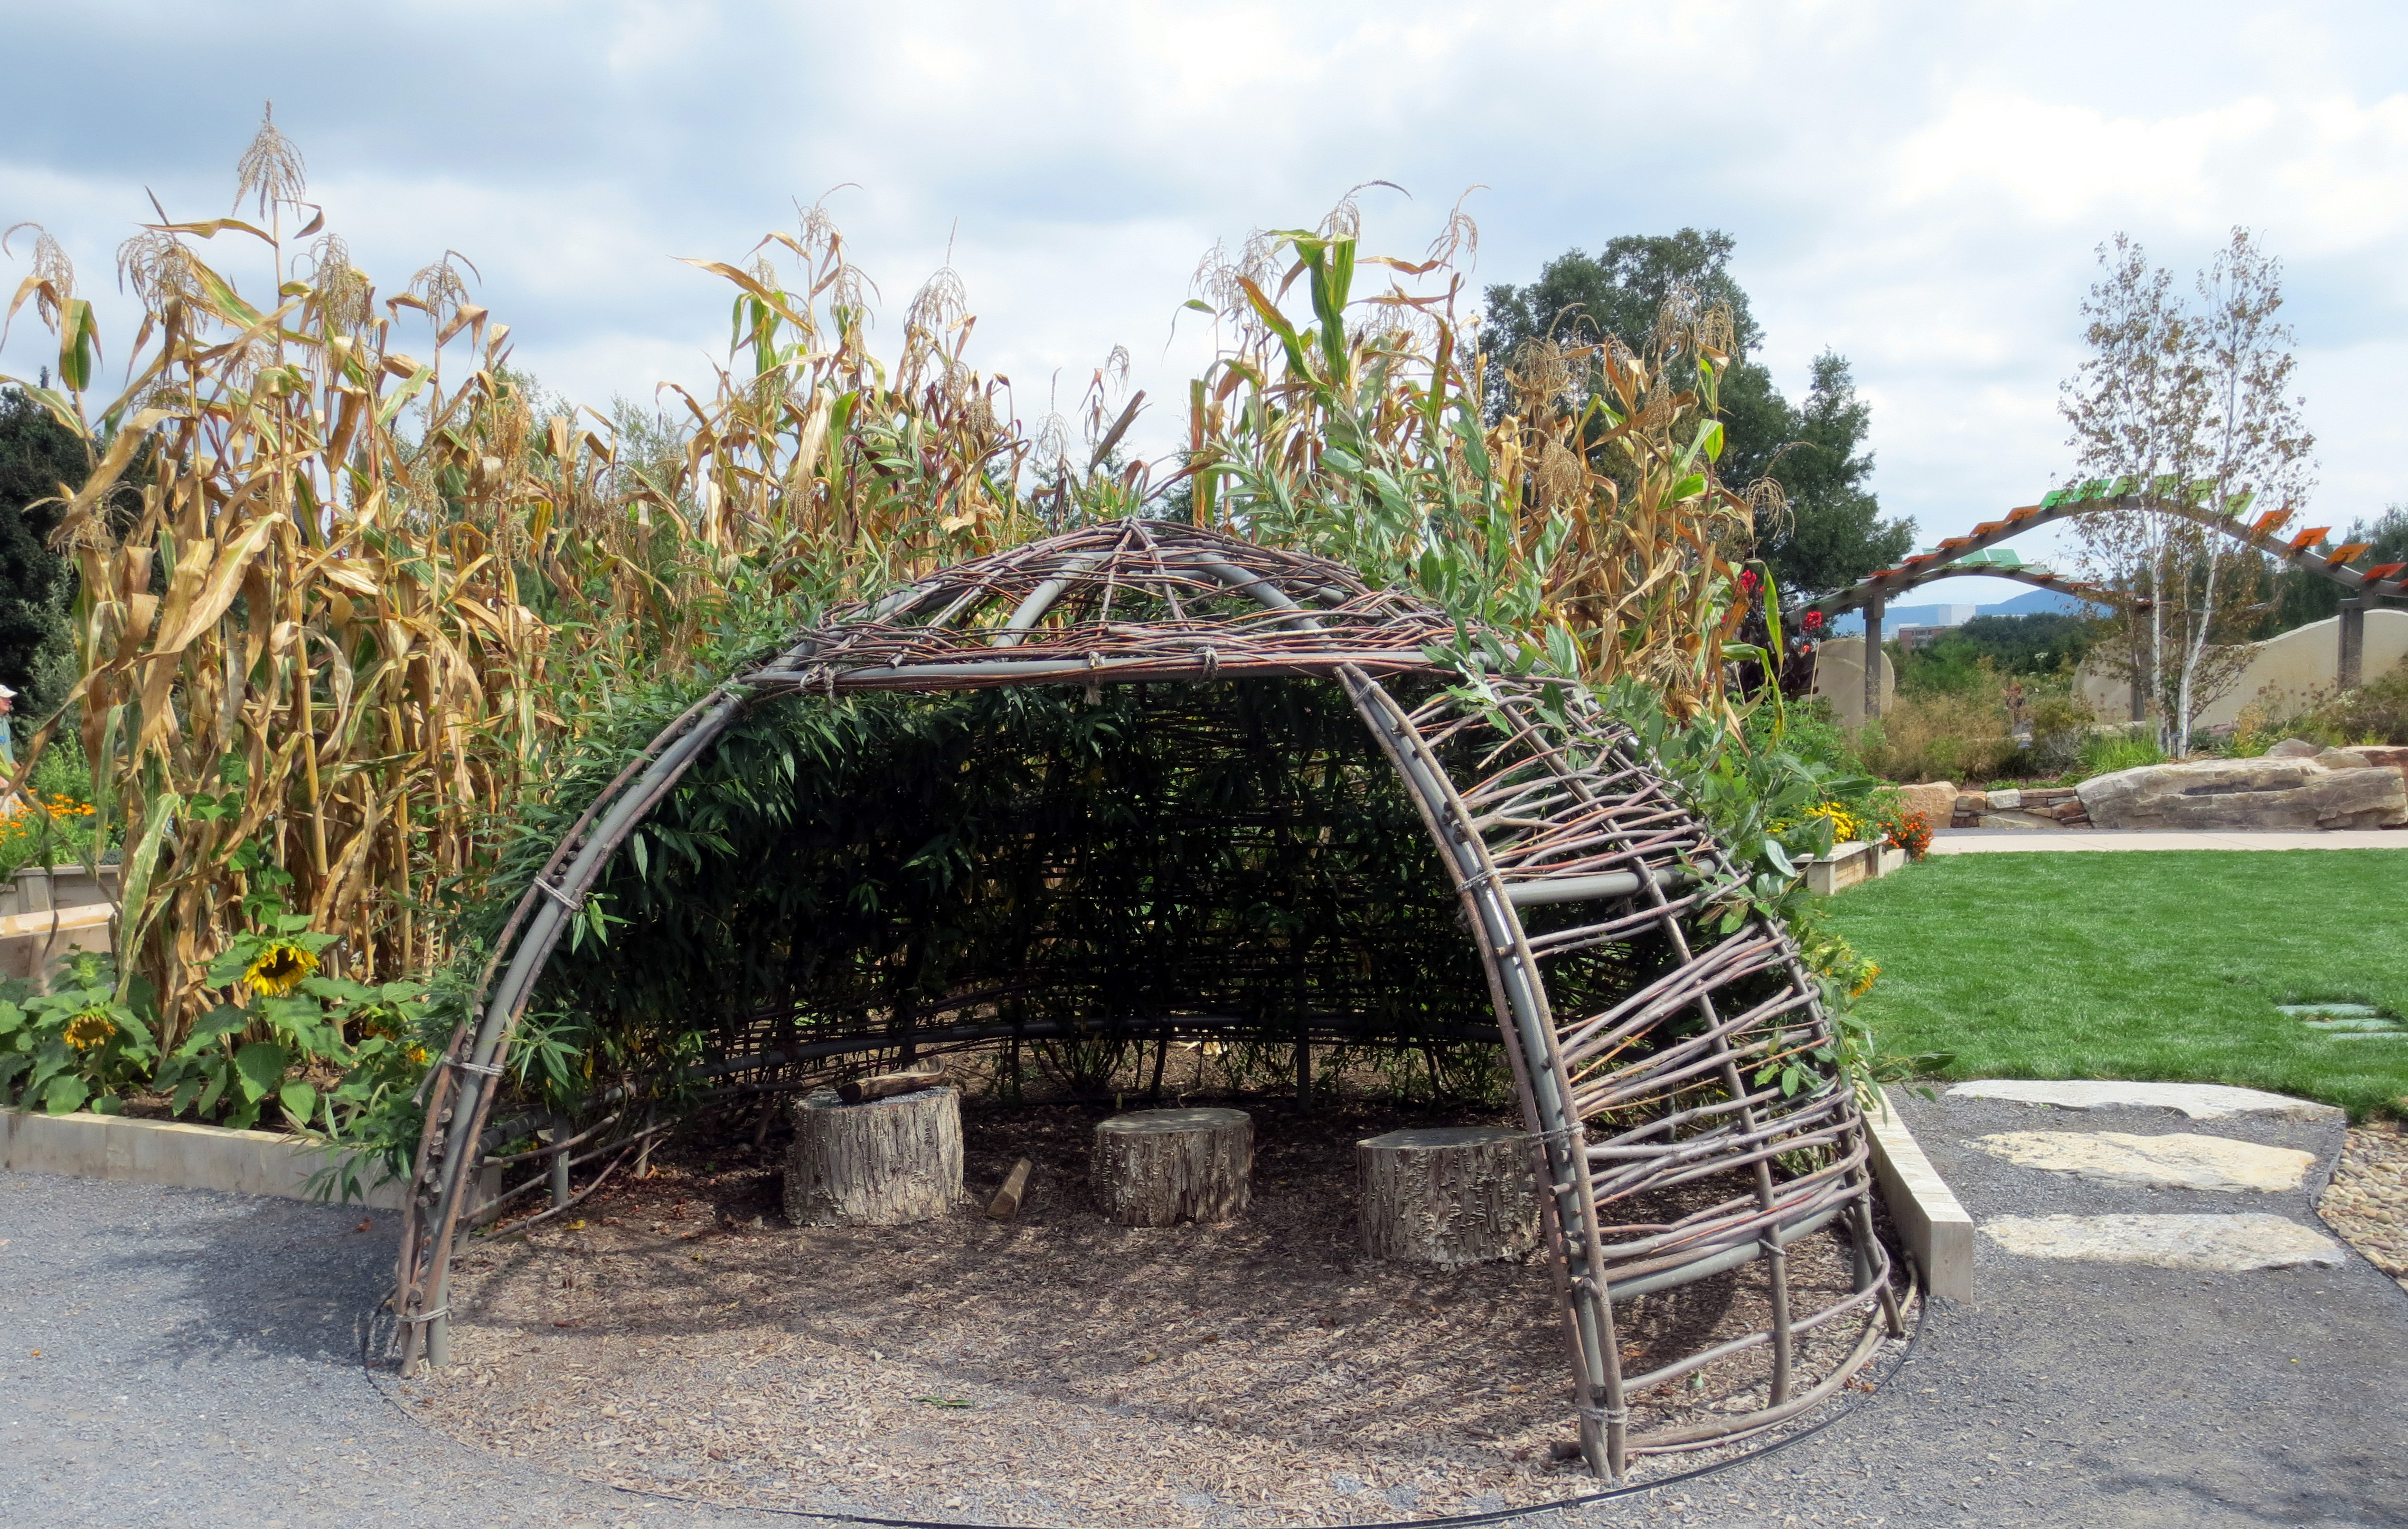 Crop guarding hut in children's garden October 2015